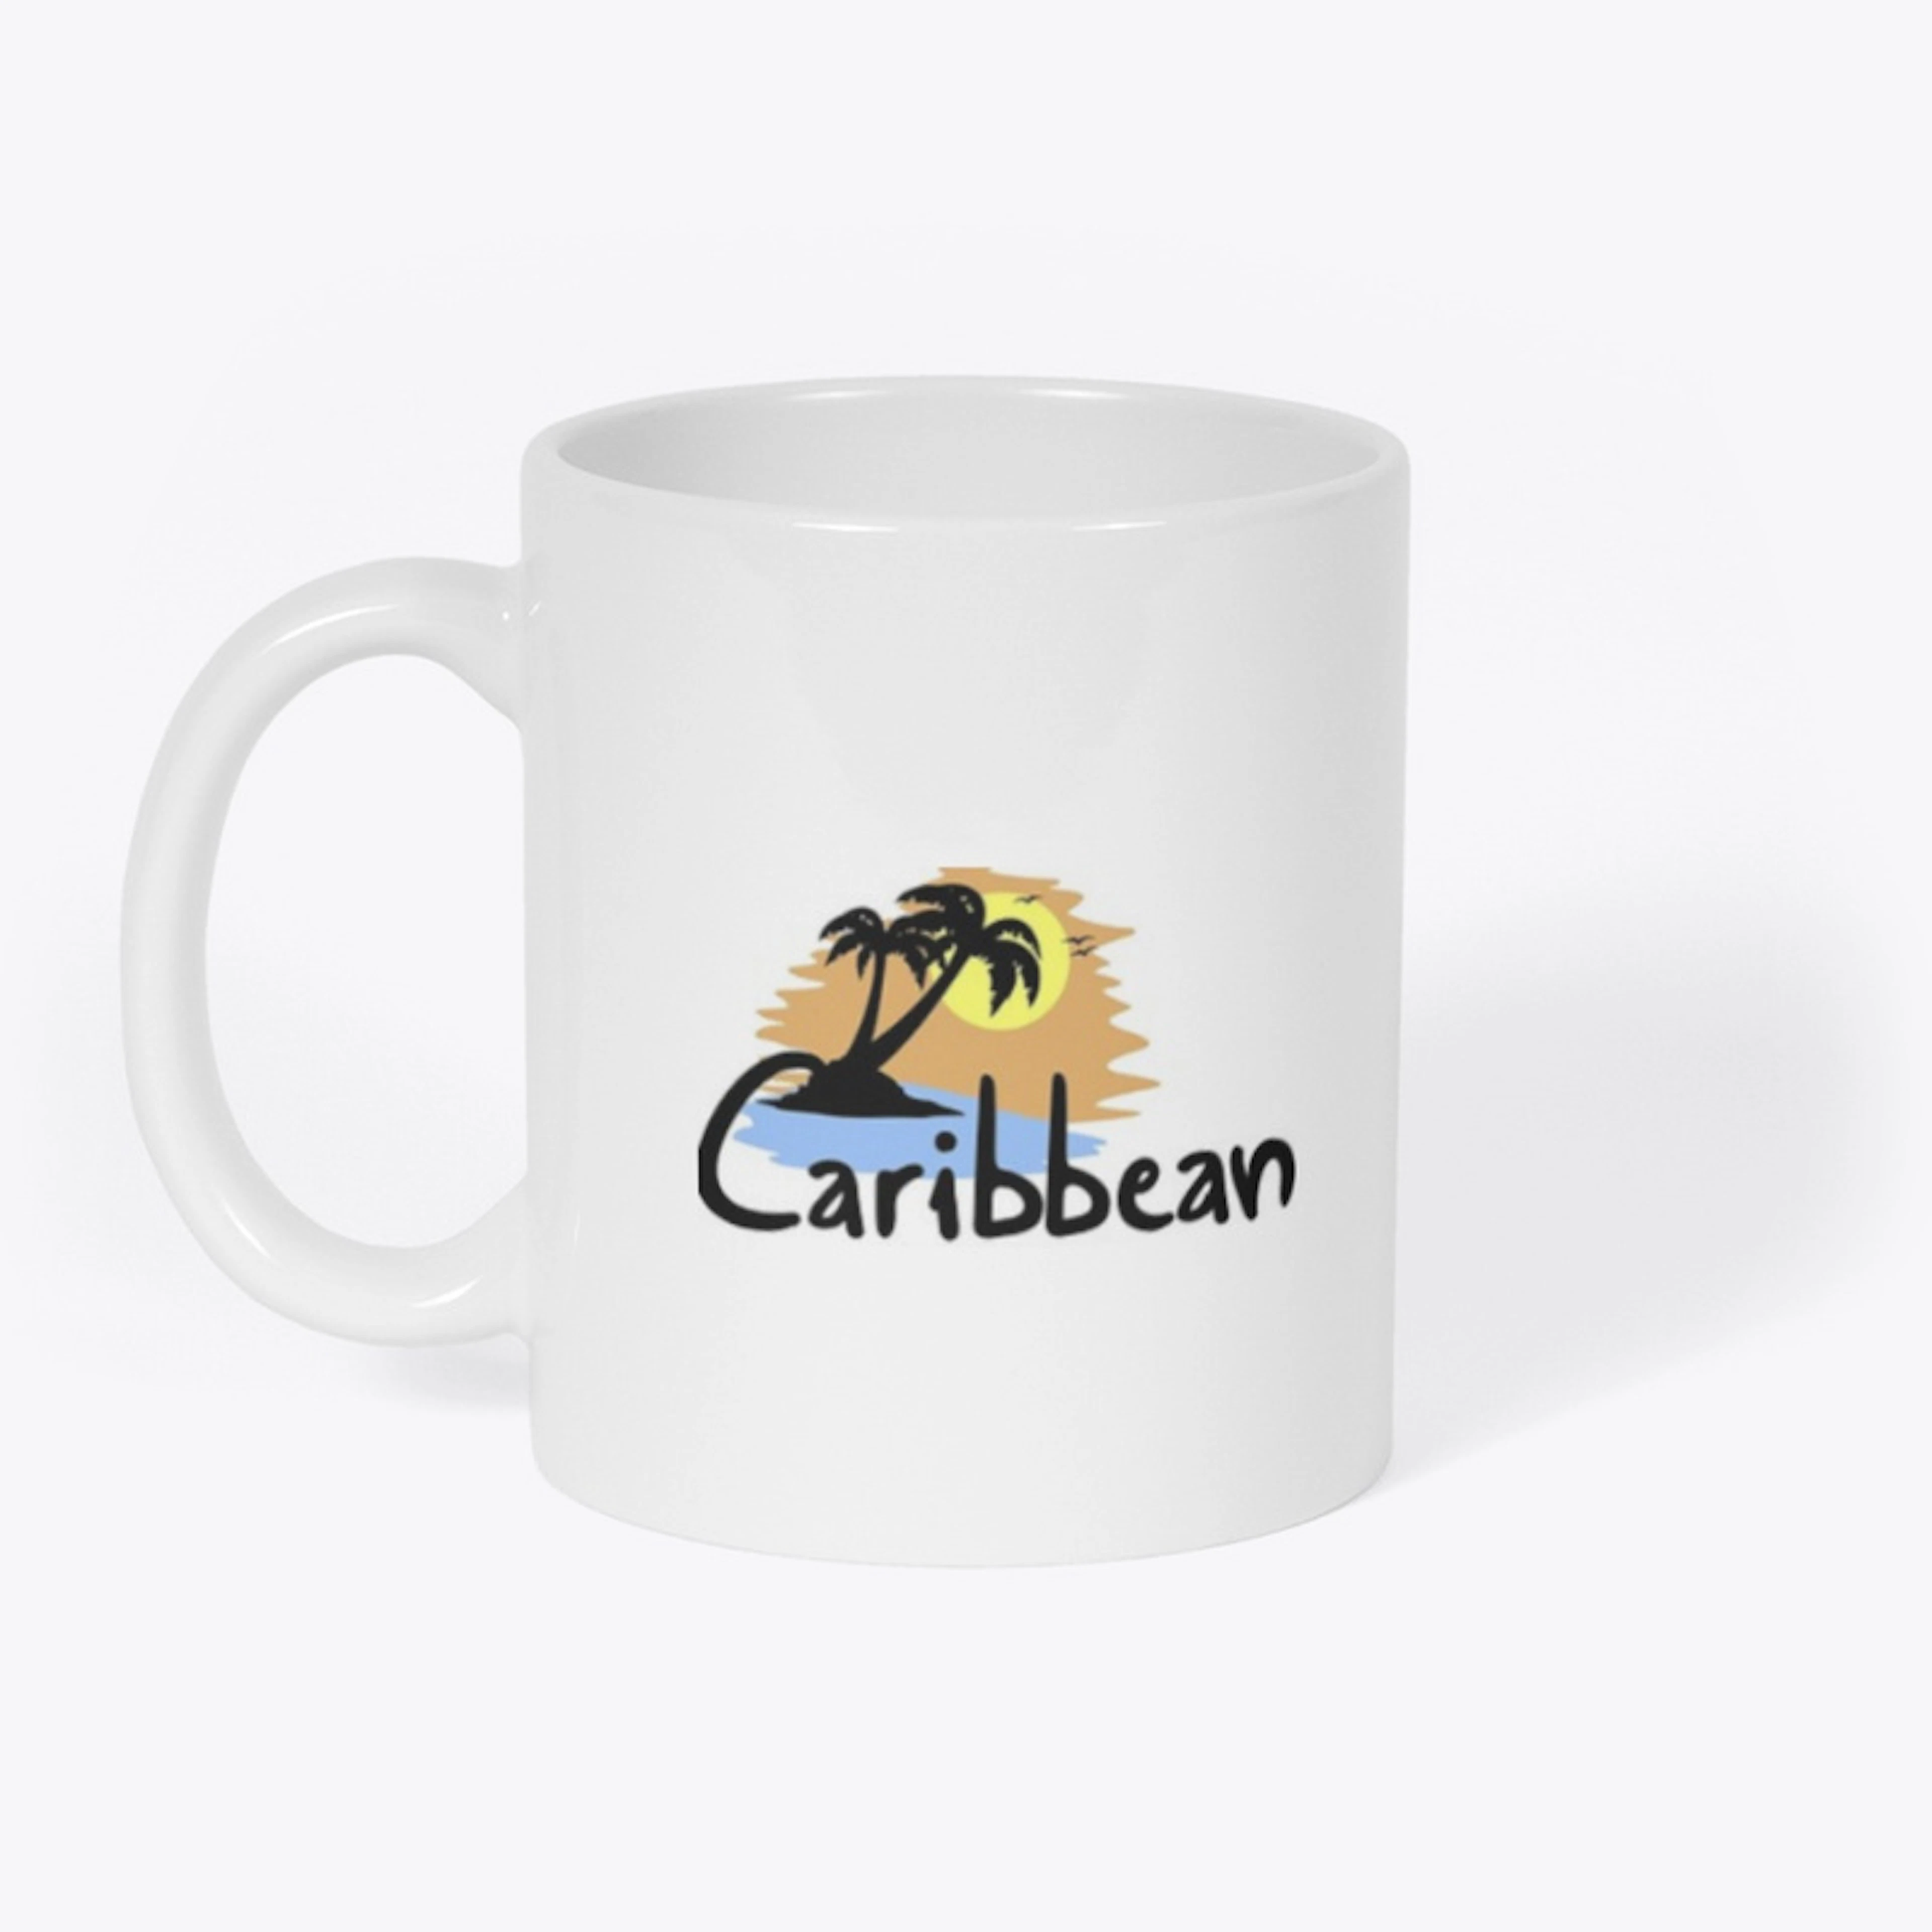 caribbean mug